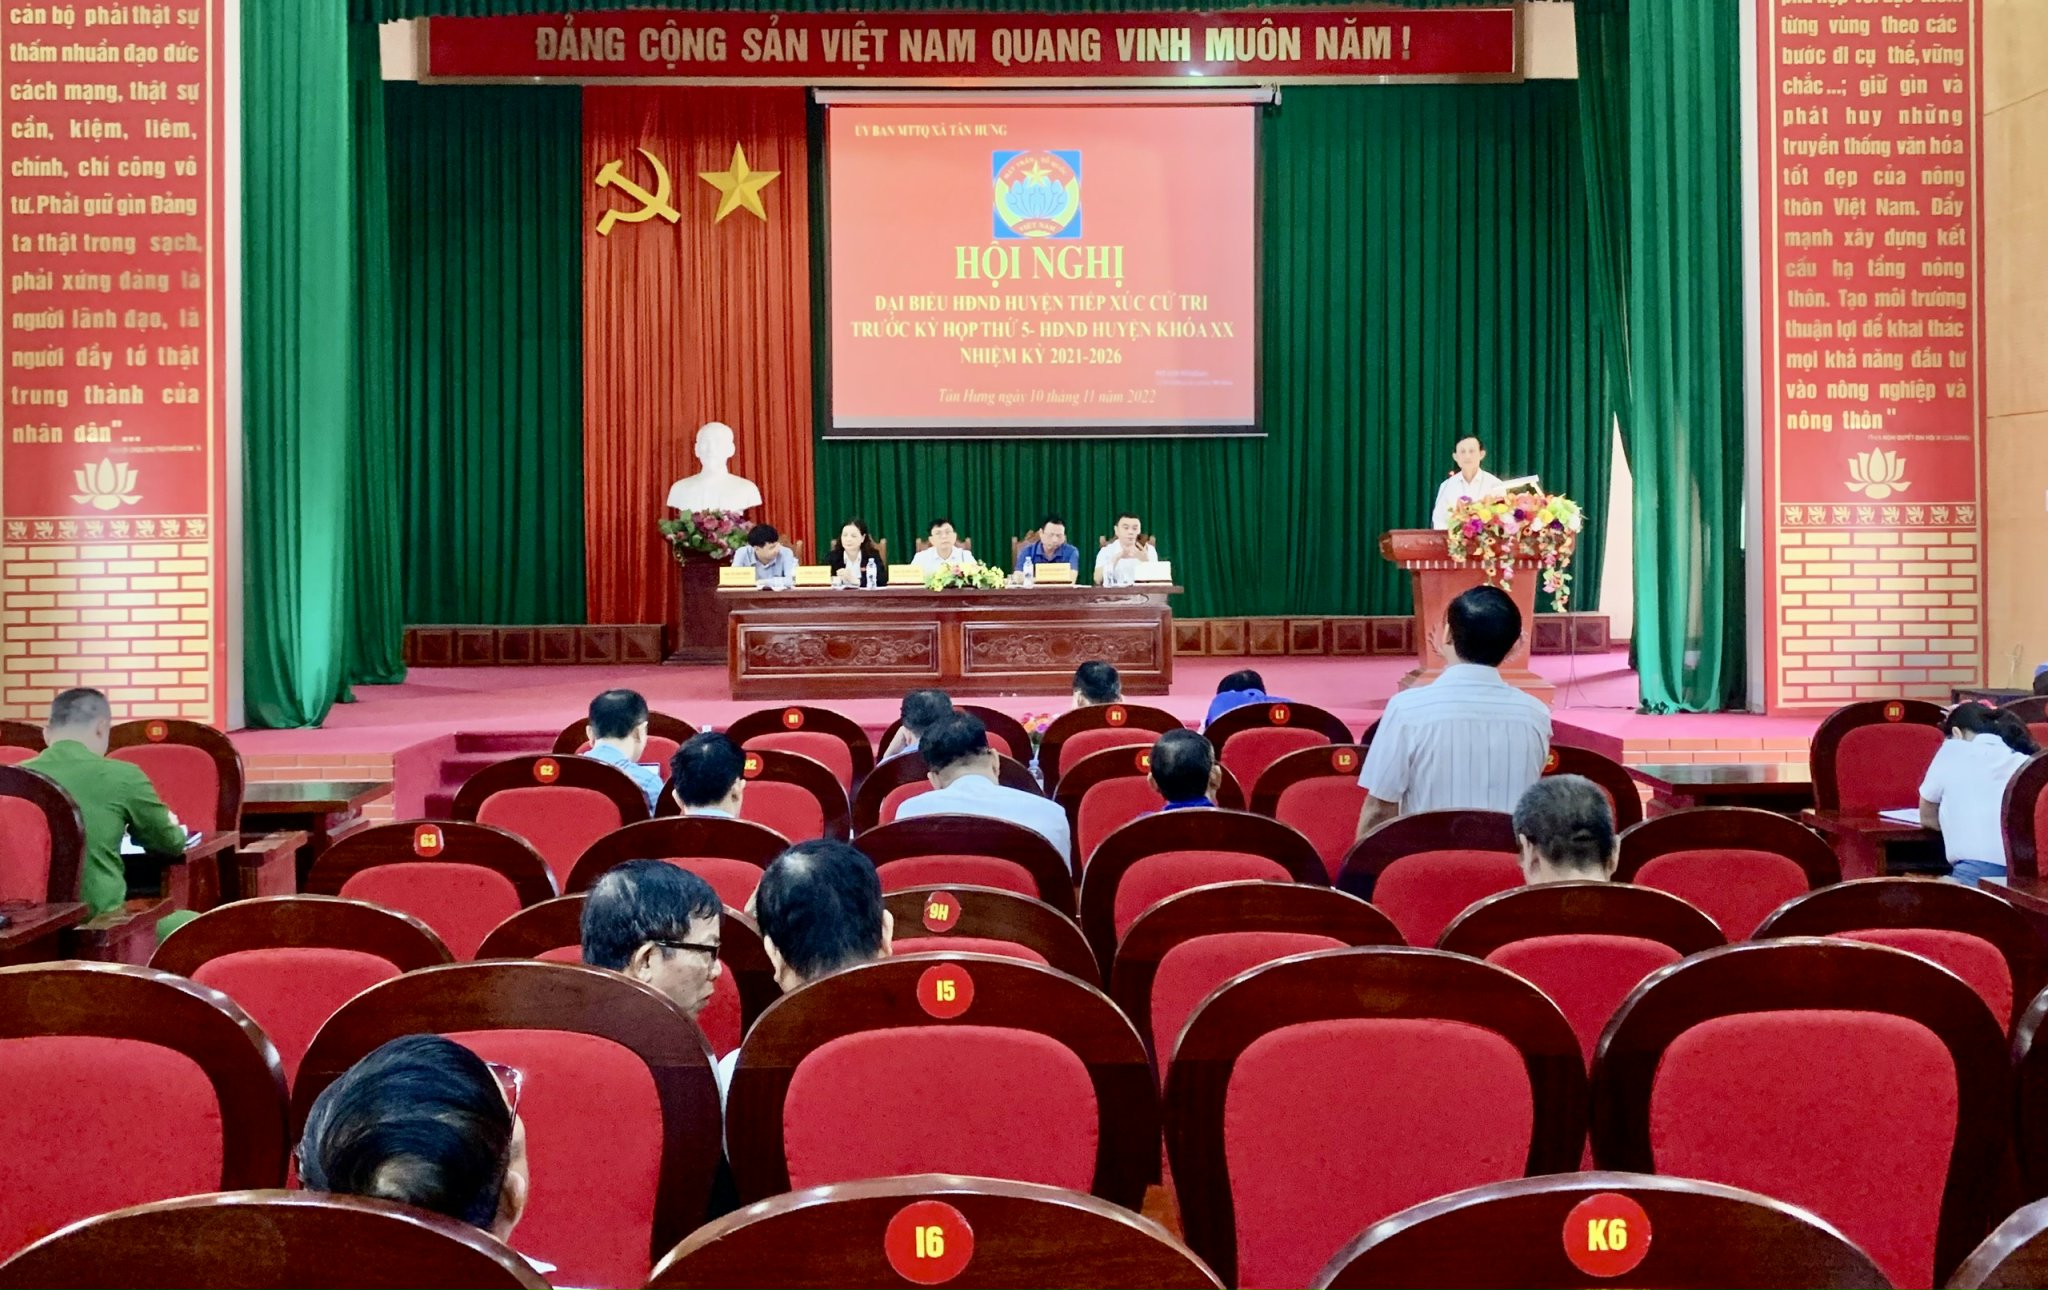 Hãy xem hình ảnh Đại biểu HĐND huyện Lạng Giang đang tham dự phiên họp đầy trách nhiệm và sự chuyên nghiệp để cảm nhận sự đoàn kết và nỗ lực của địa phương trong việc giải quyết các vấn đề.